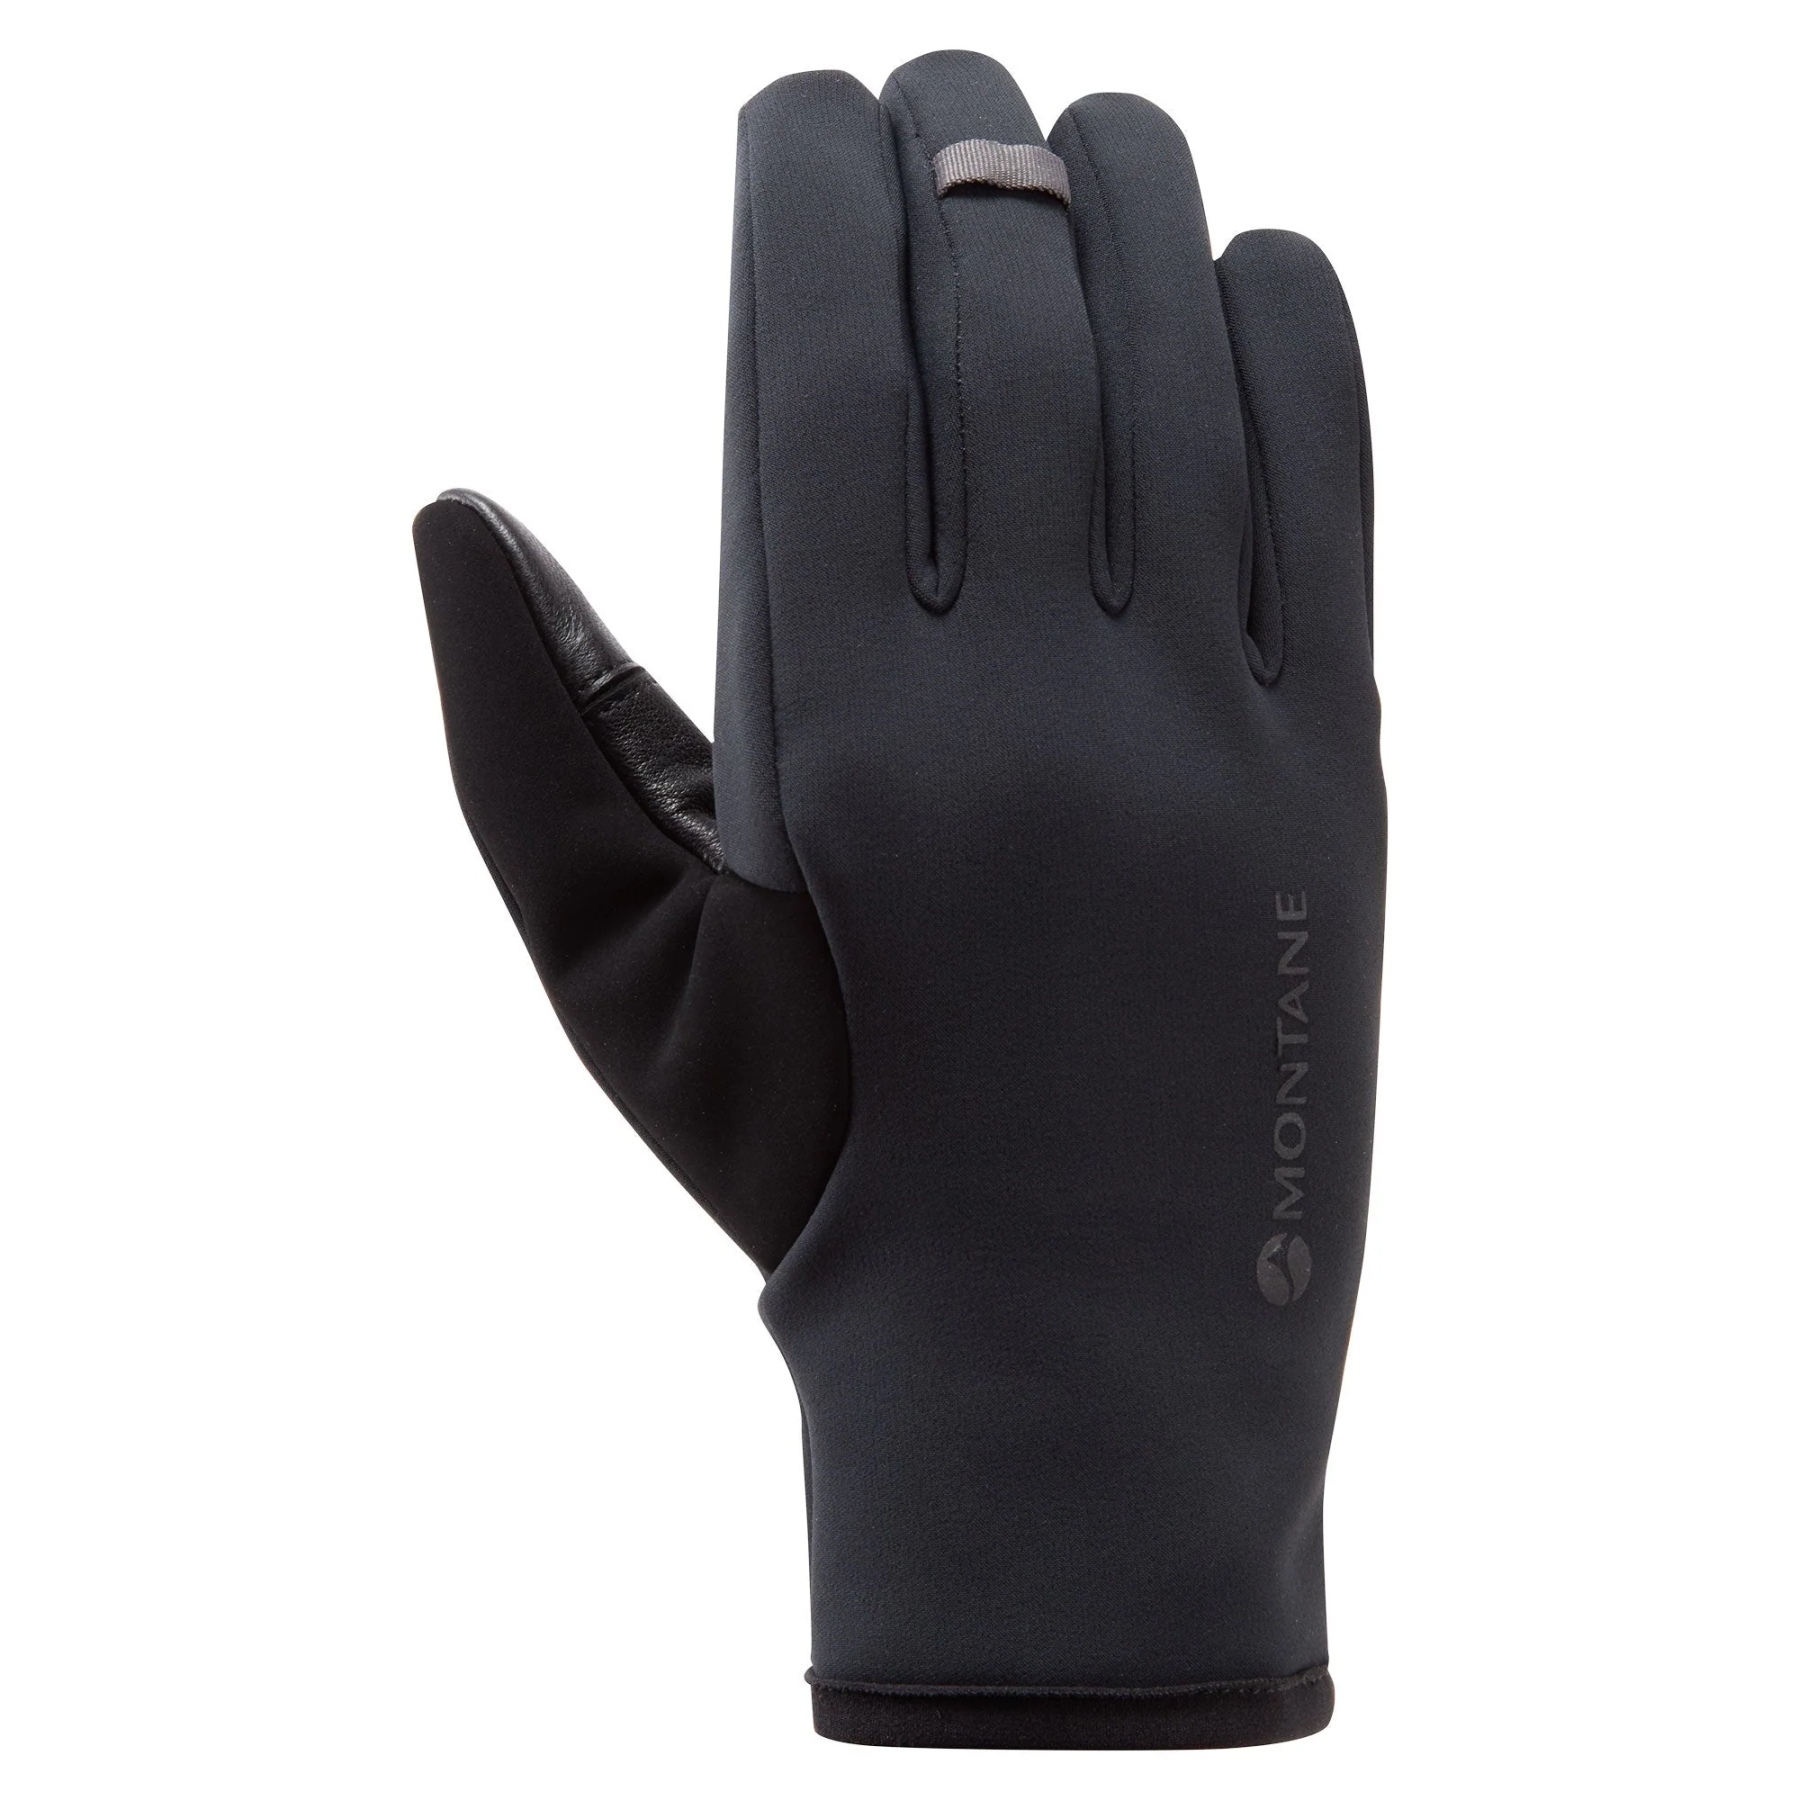 Productfoto van Montane Windjammer Lite Dames Winddichte Handschoenen - zwart